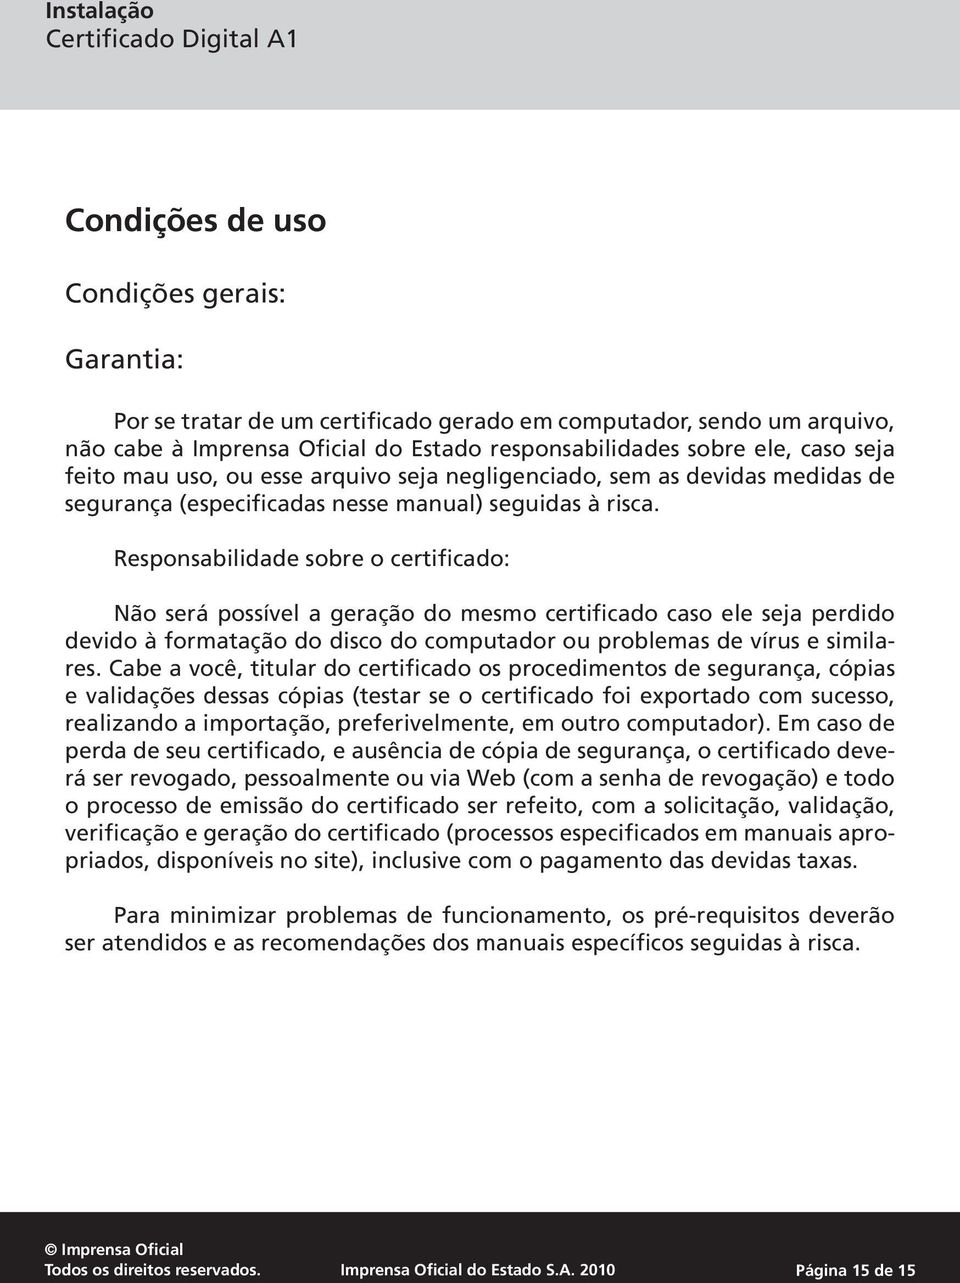 Responsabilidade sobre o certificado: Não será possível a geração do mesmo certificado caso ele seja perdido devido à formatação do disco do computador ou problemas de vírus e similares.